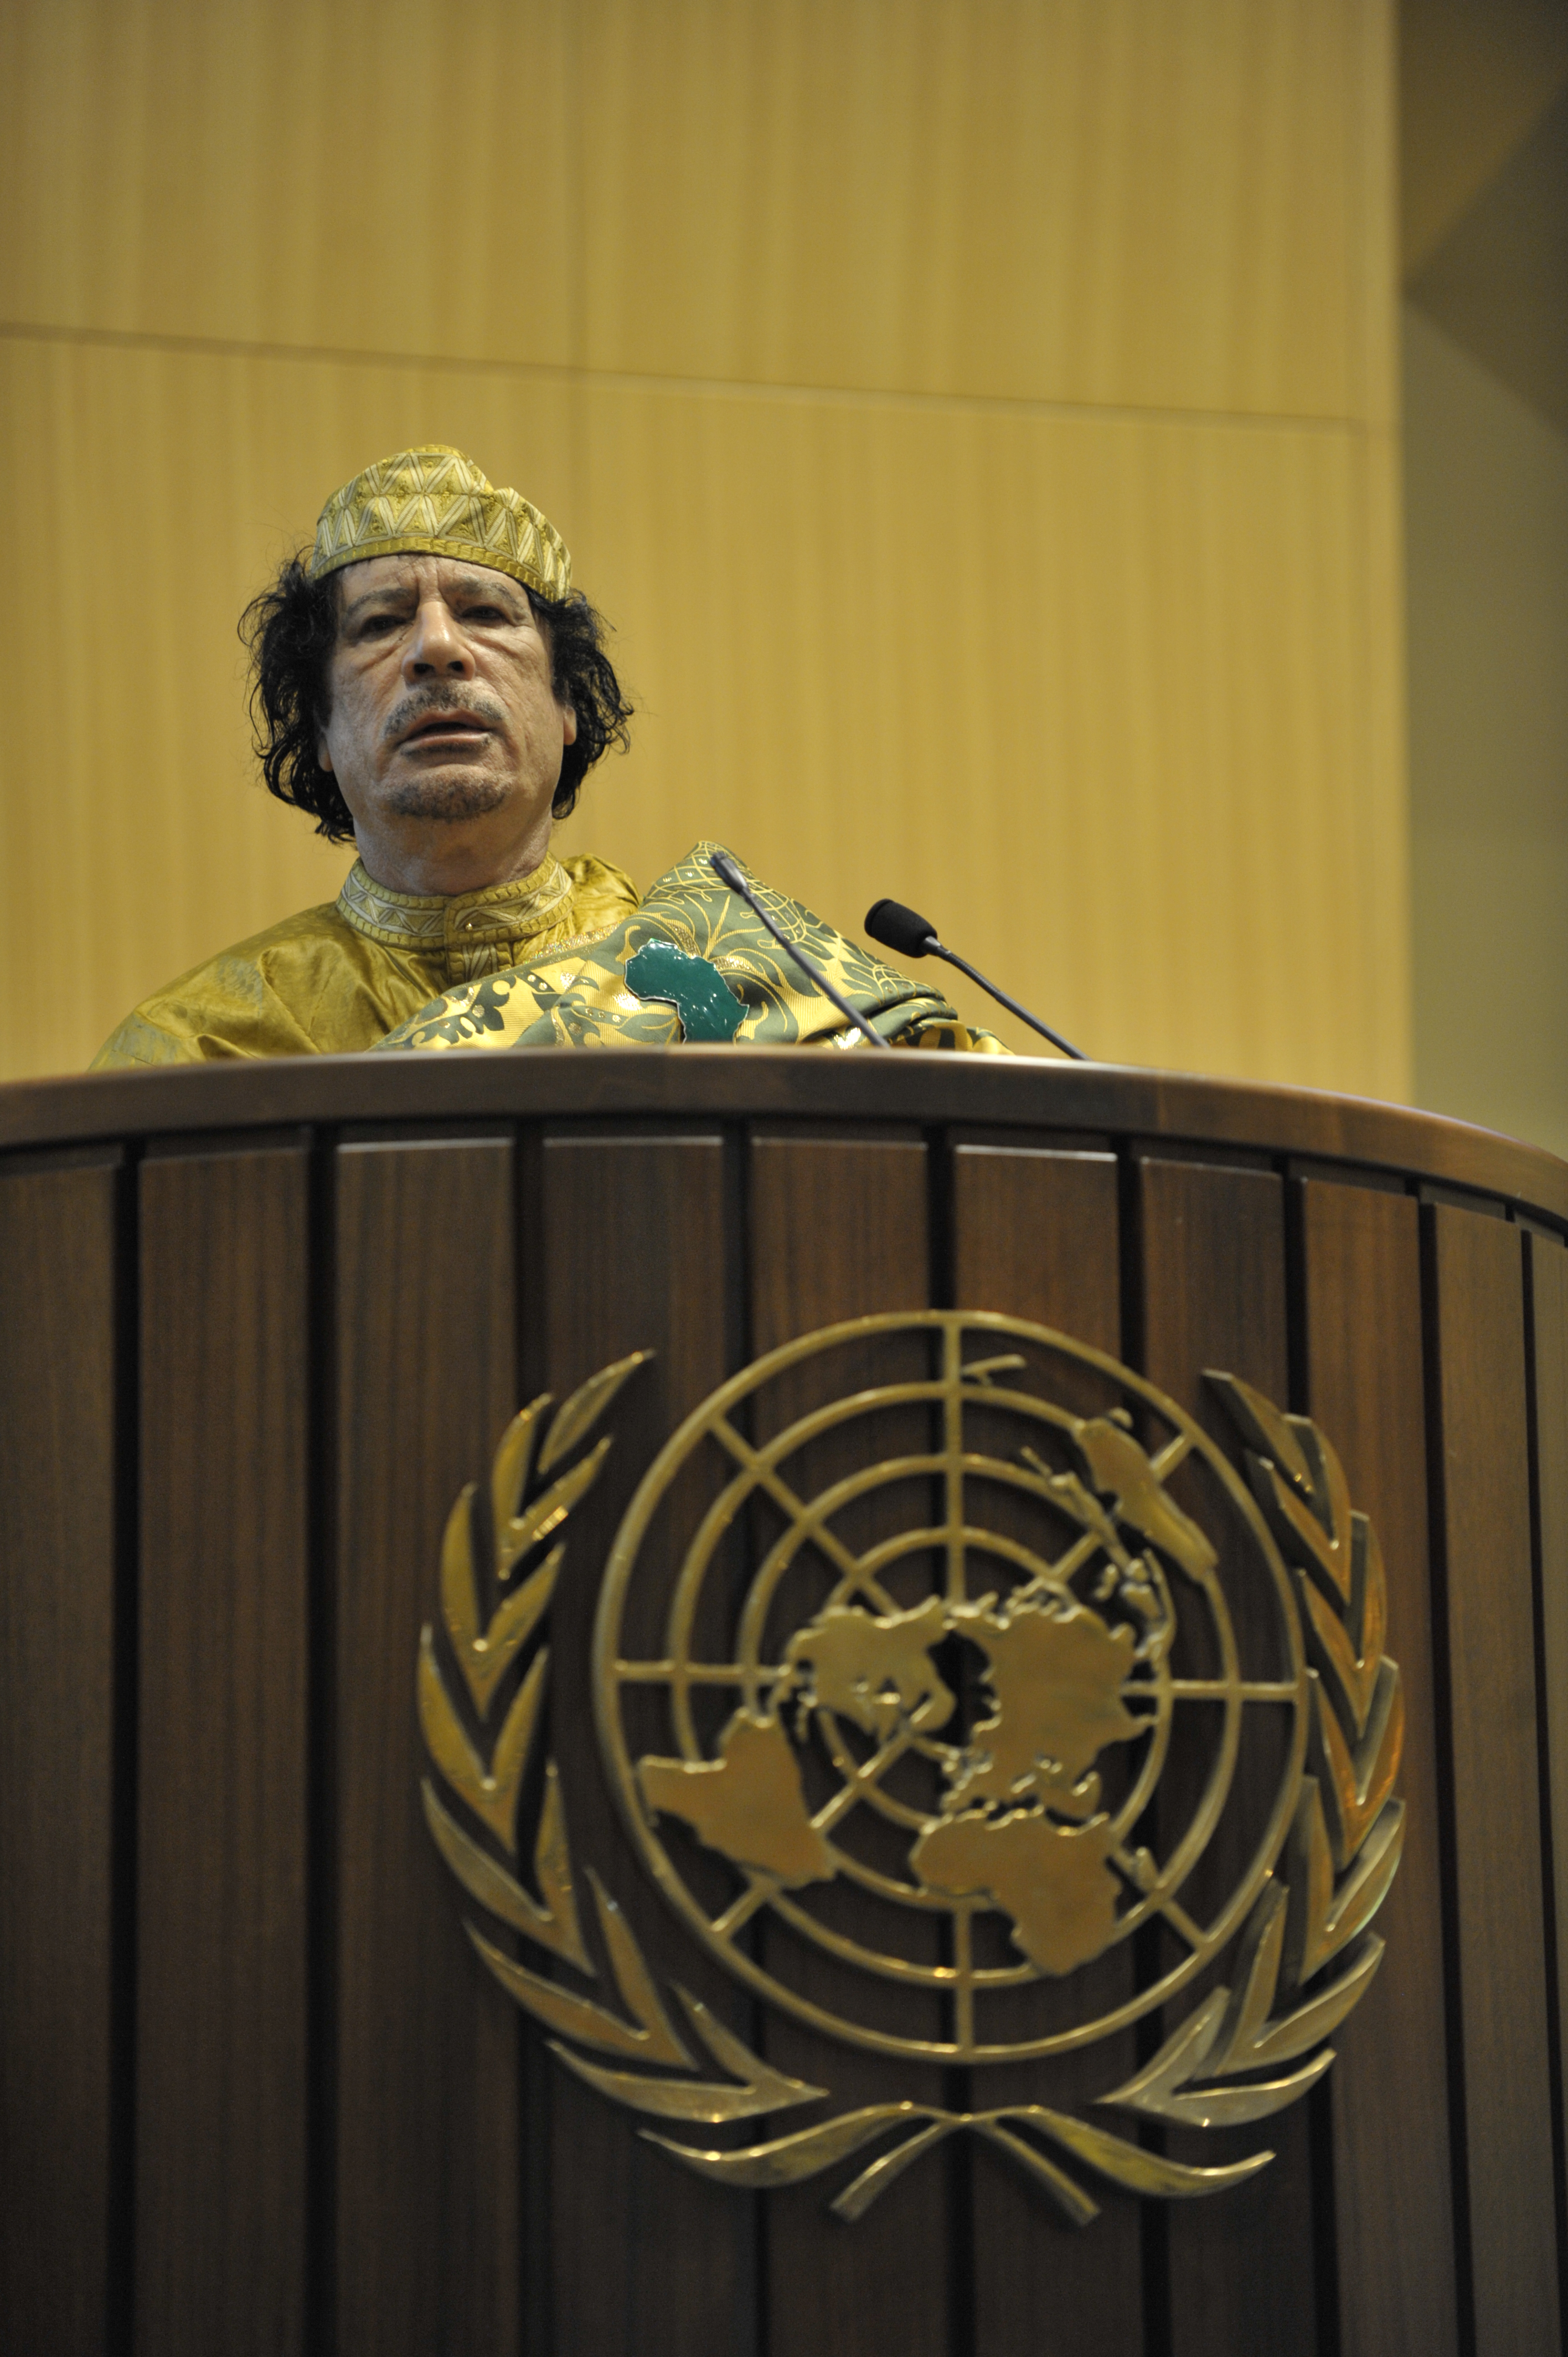 Muammar al-Gaddafi, 12th AU Summit, 090202-N-0506A-534